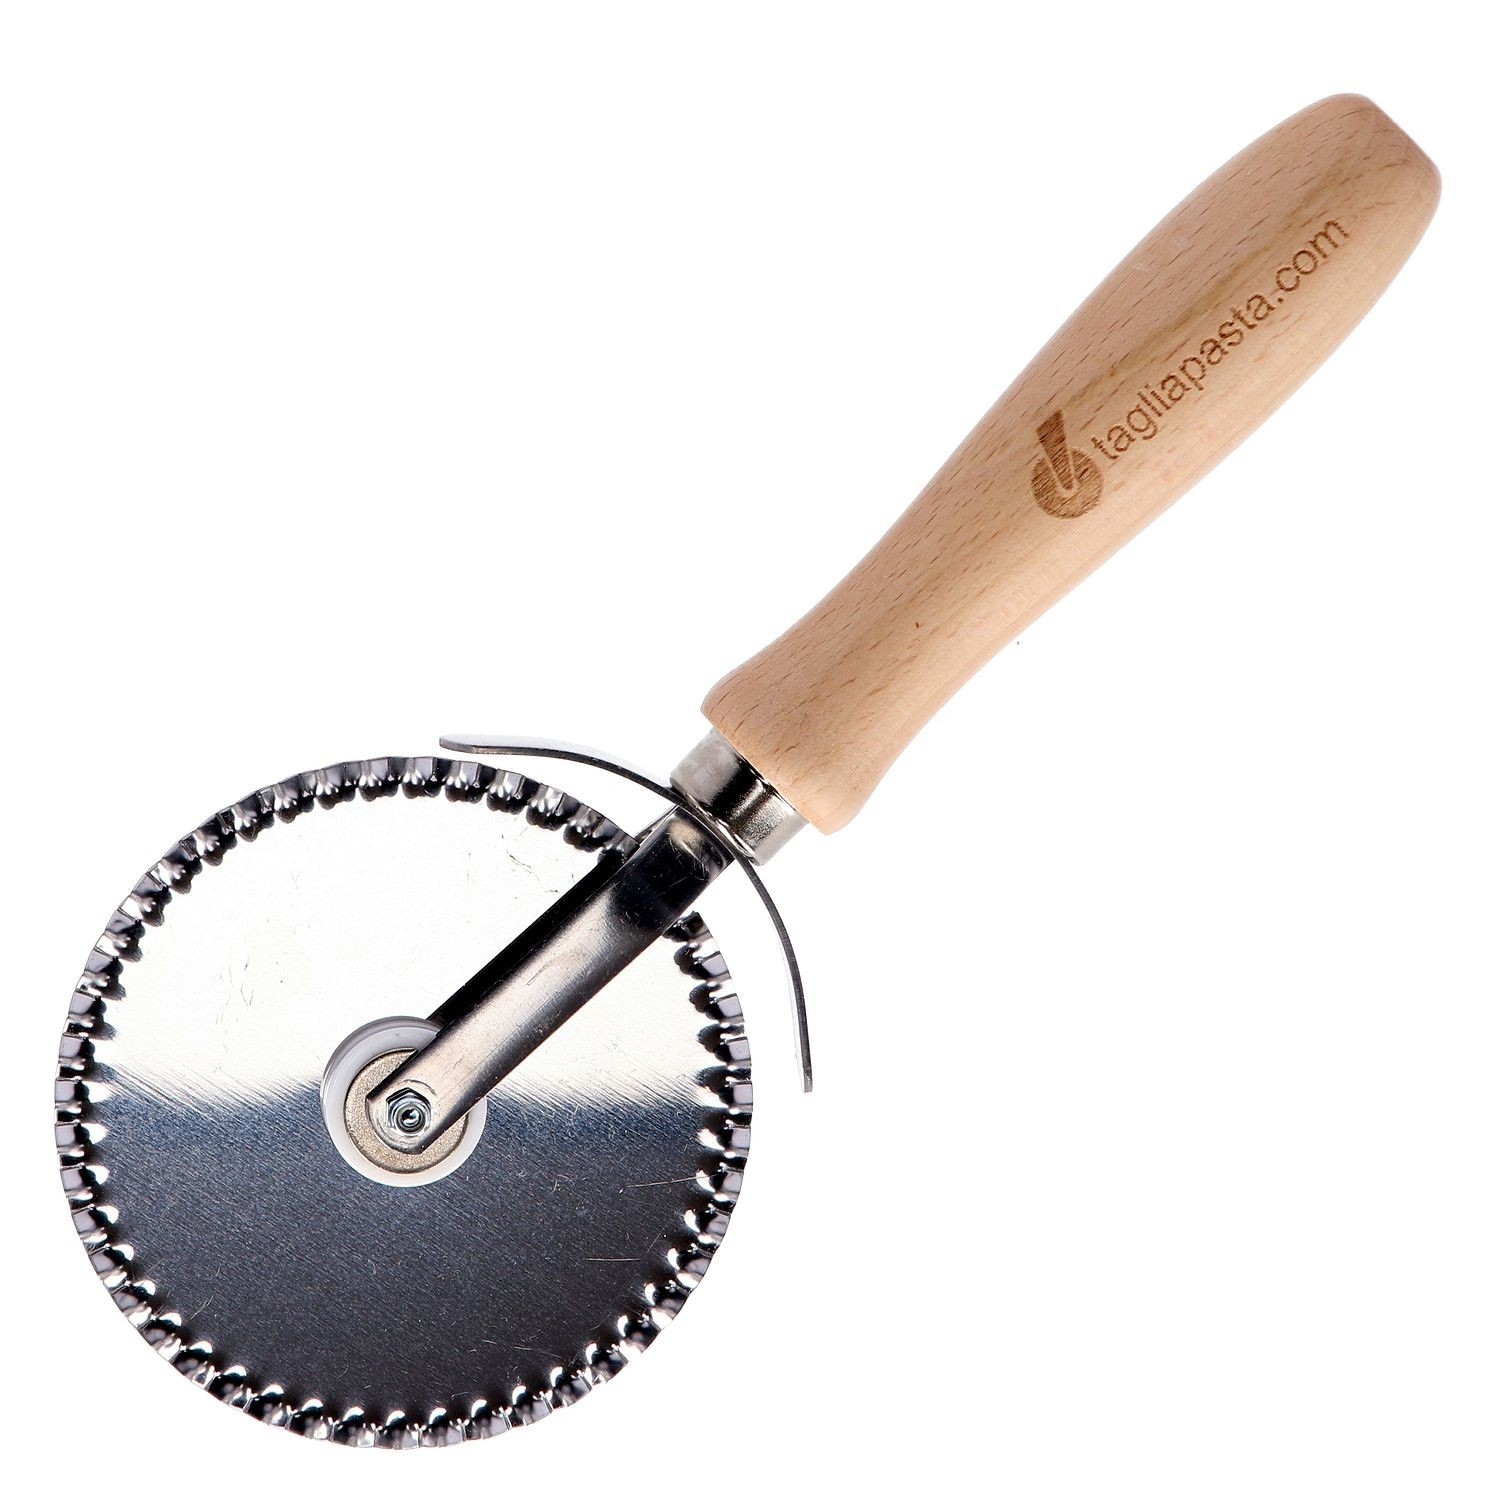 utensili da cucina Wheel Cutter strumenti comoda impugnatura sul palmo-Rotella per Pizza colore: grigio rosso & Dario-Rotella tagliapizza 